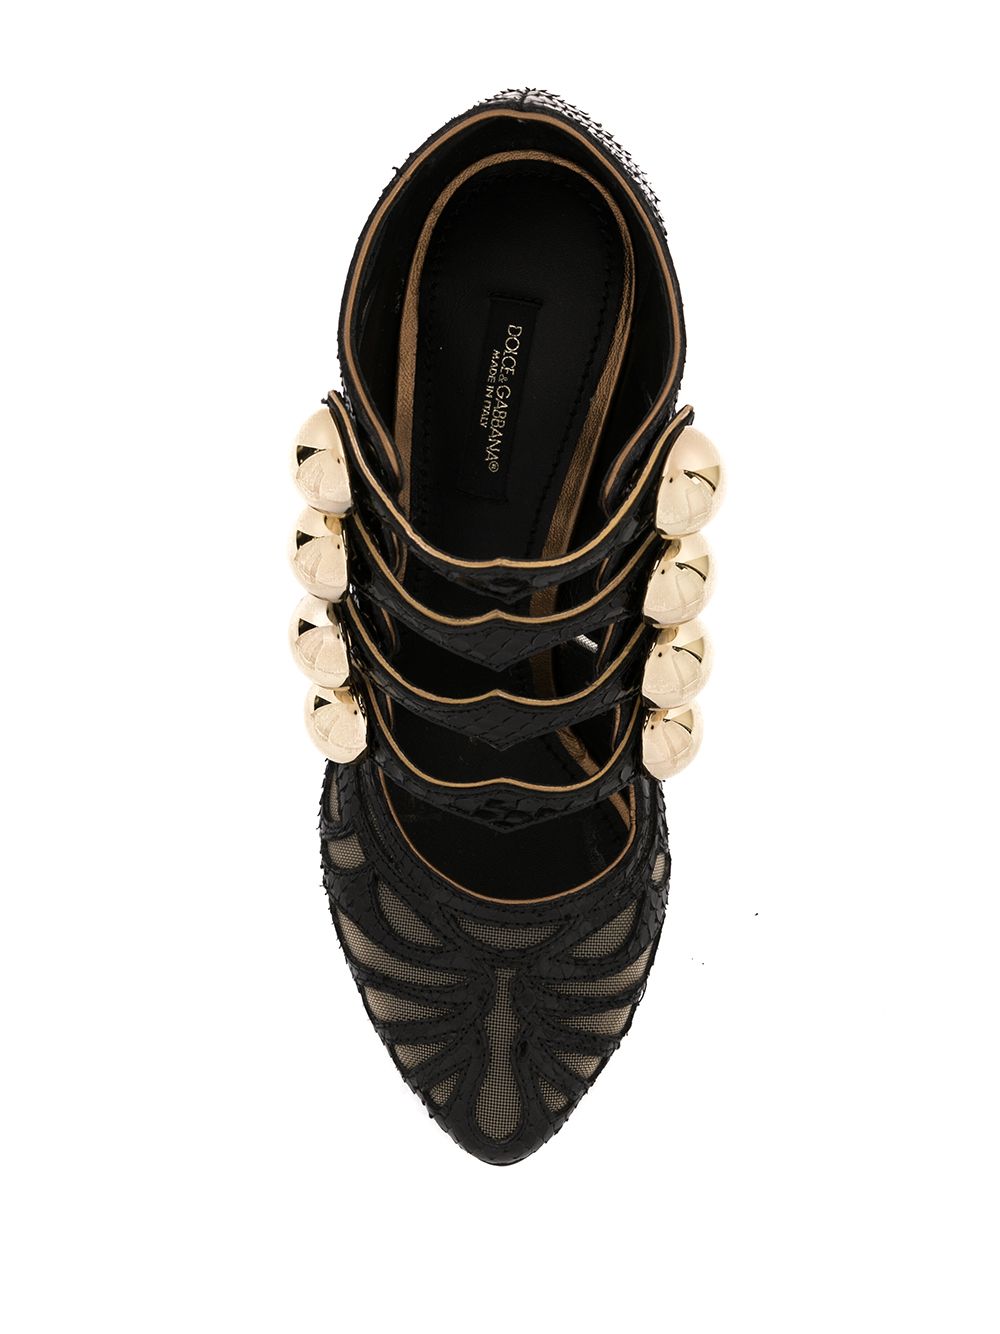 фото Dolce & gabbana туфли на массивном каблуке с прозрачными вставками